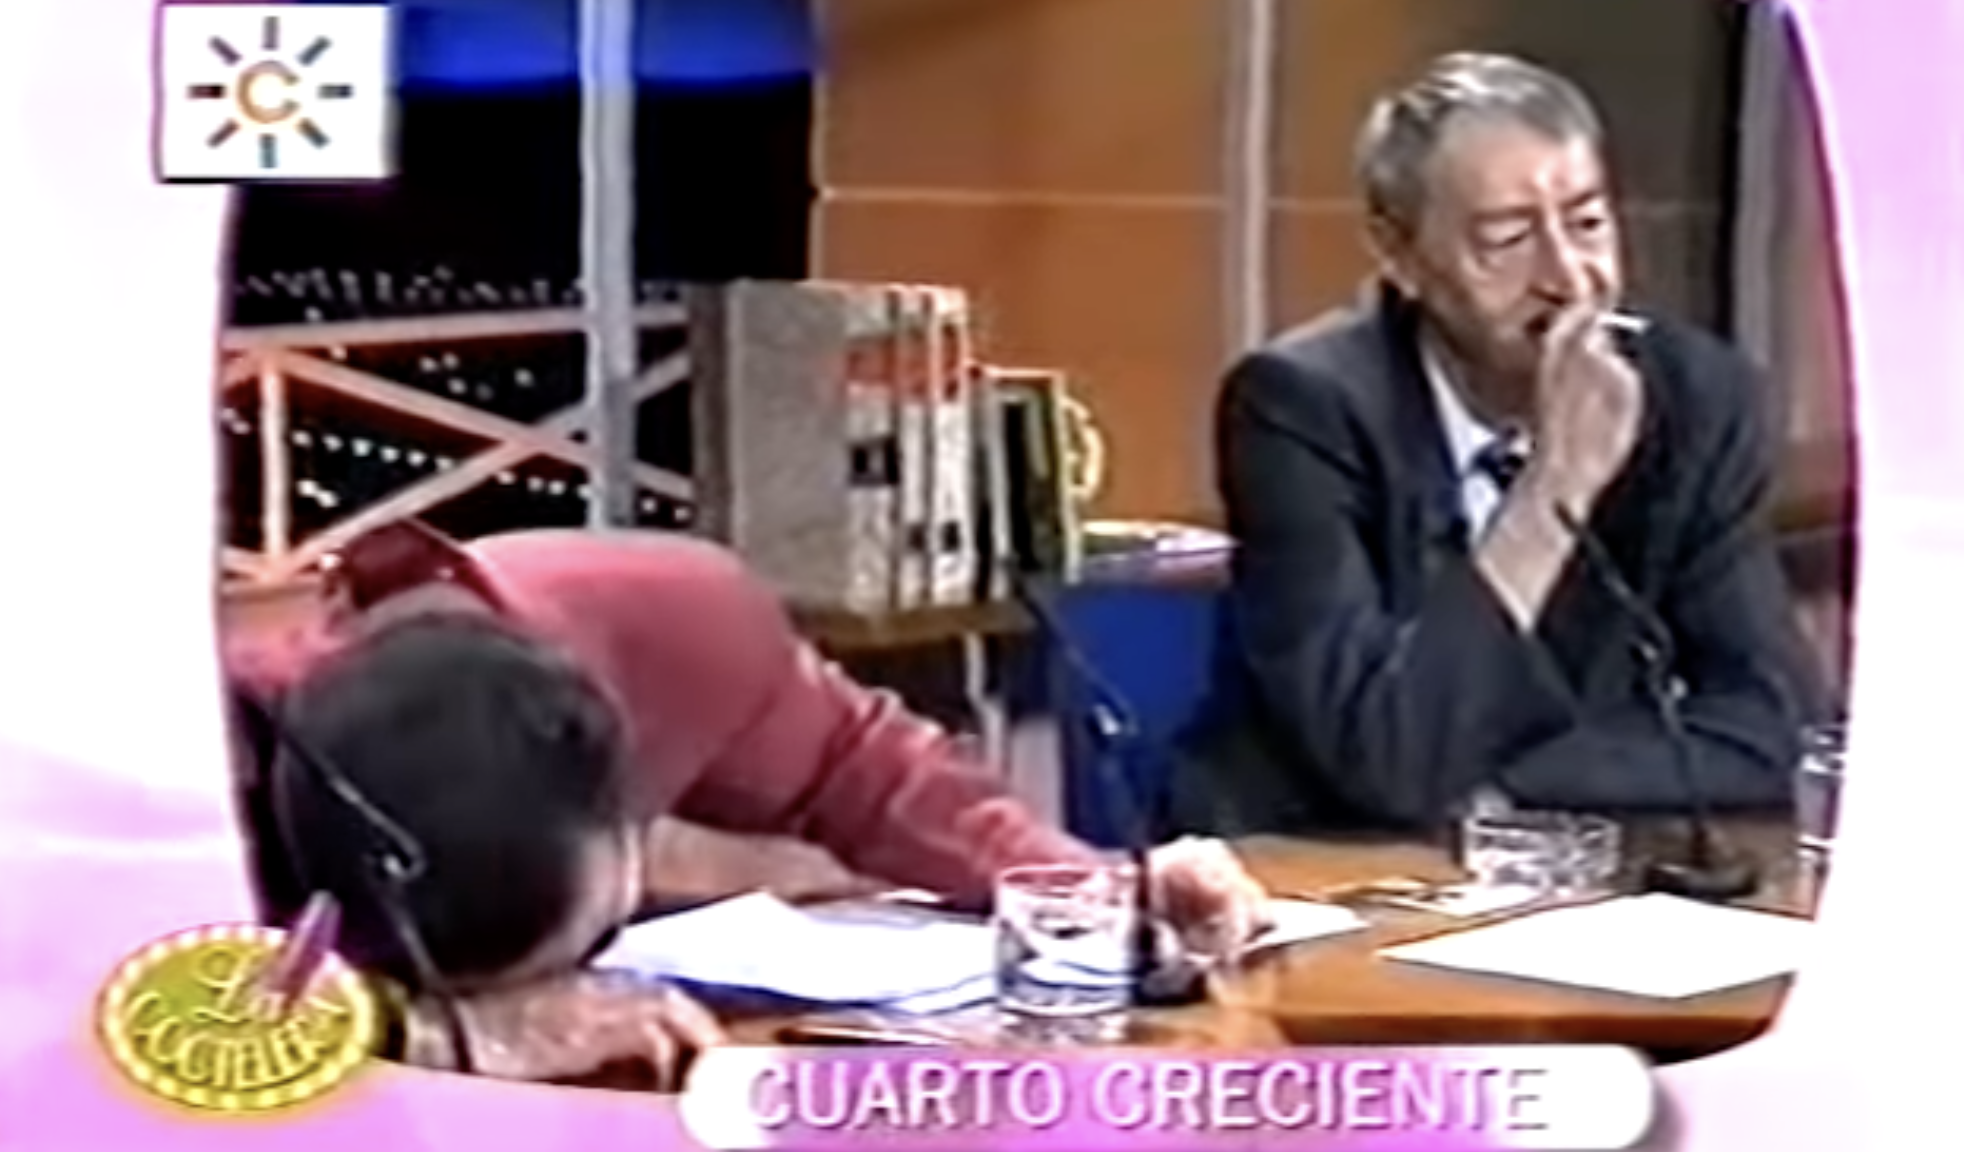 Juan y Medio, desplomado de la risa, en presencia de Silvio, cigarro en mano, durante la entrevista en 'Cuarto creciente', en la RTVA de 1999.